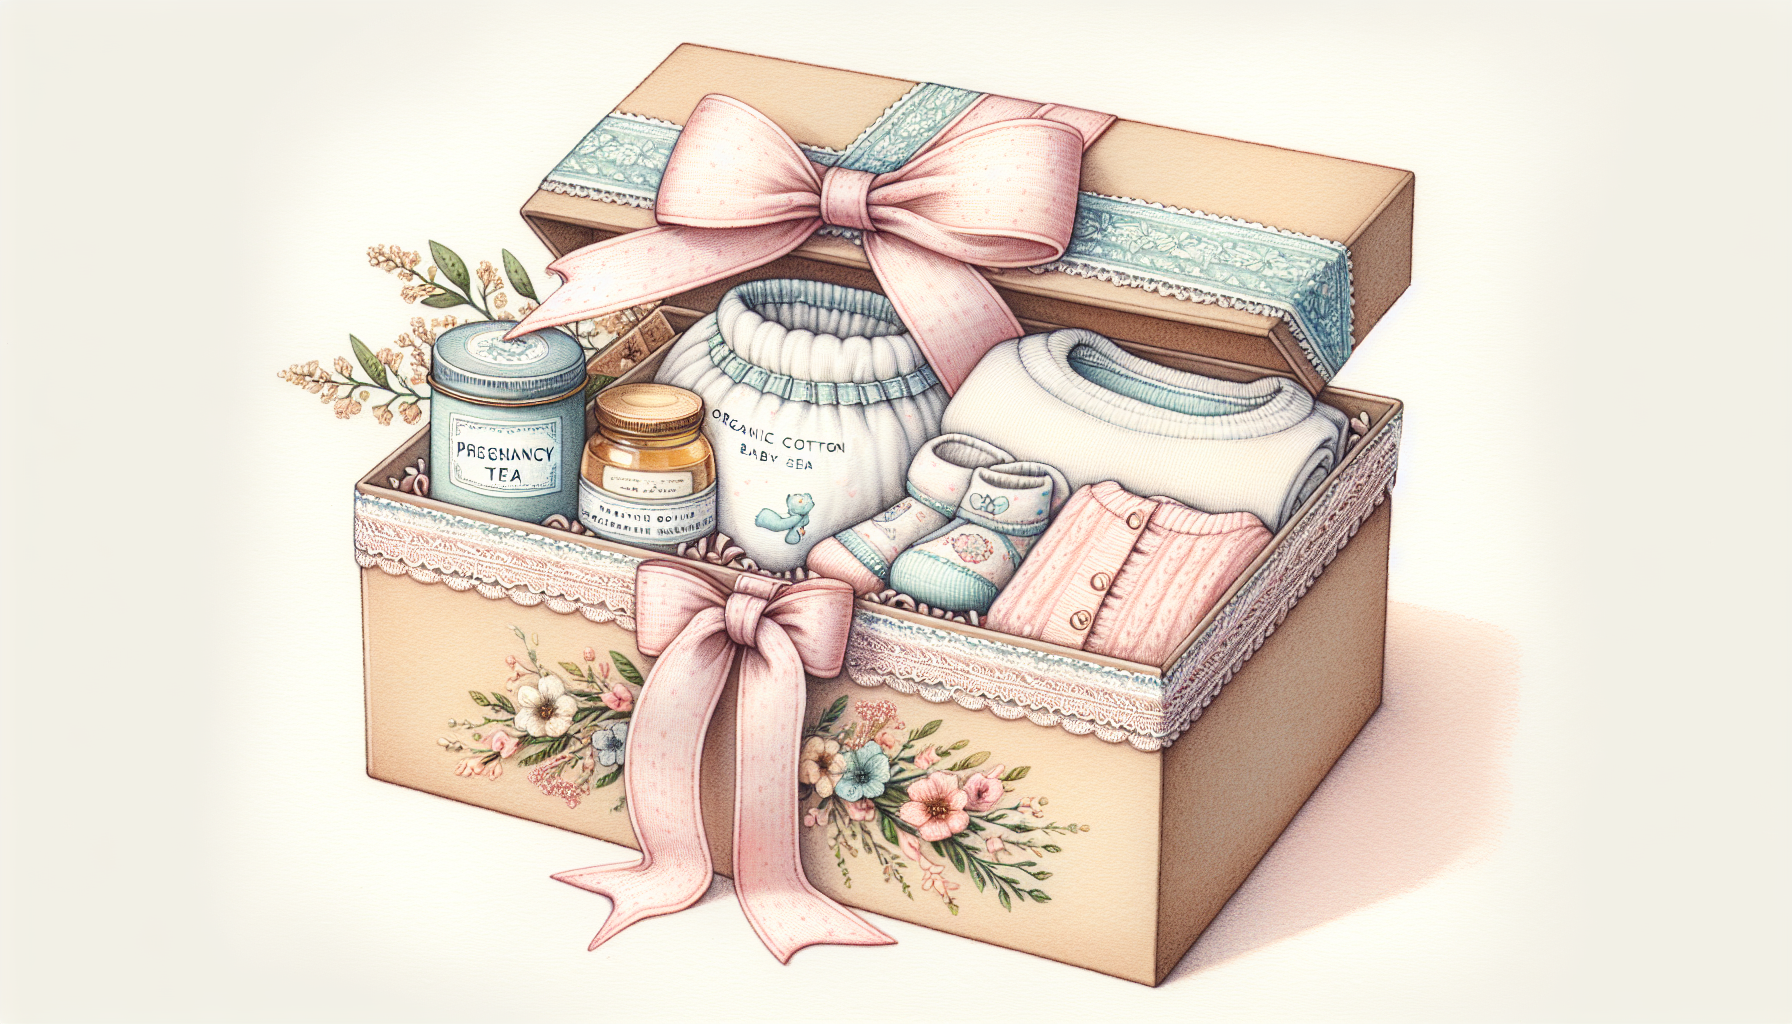 Eine liebevoll gestaltete Schwangerschafts-Geschenkbox mit verschiedenen Artikeln wie Schwangerschaftstees und Babysets